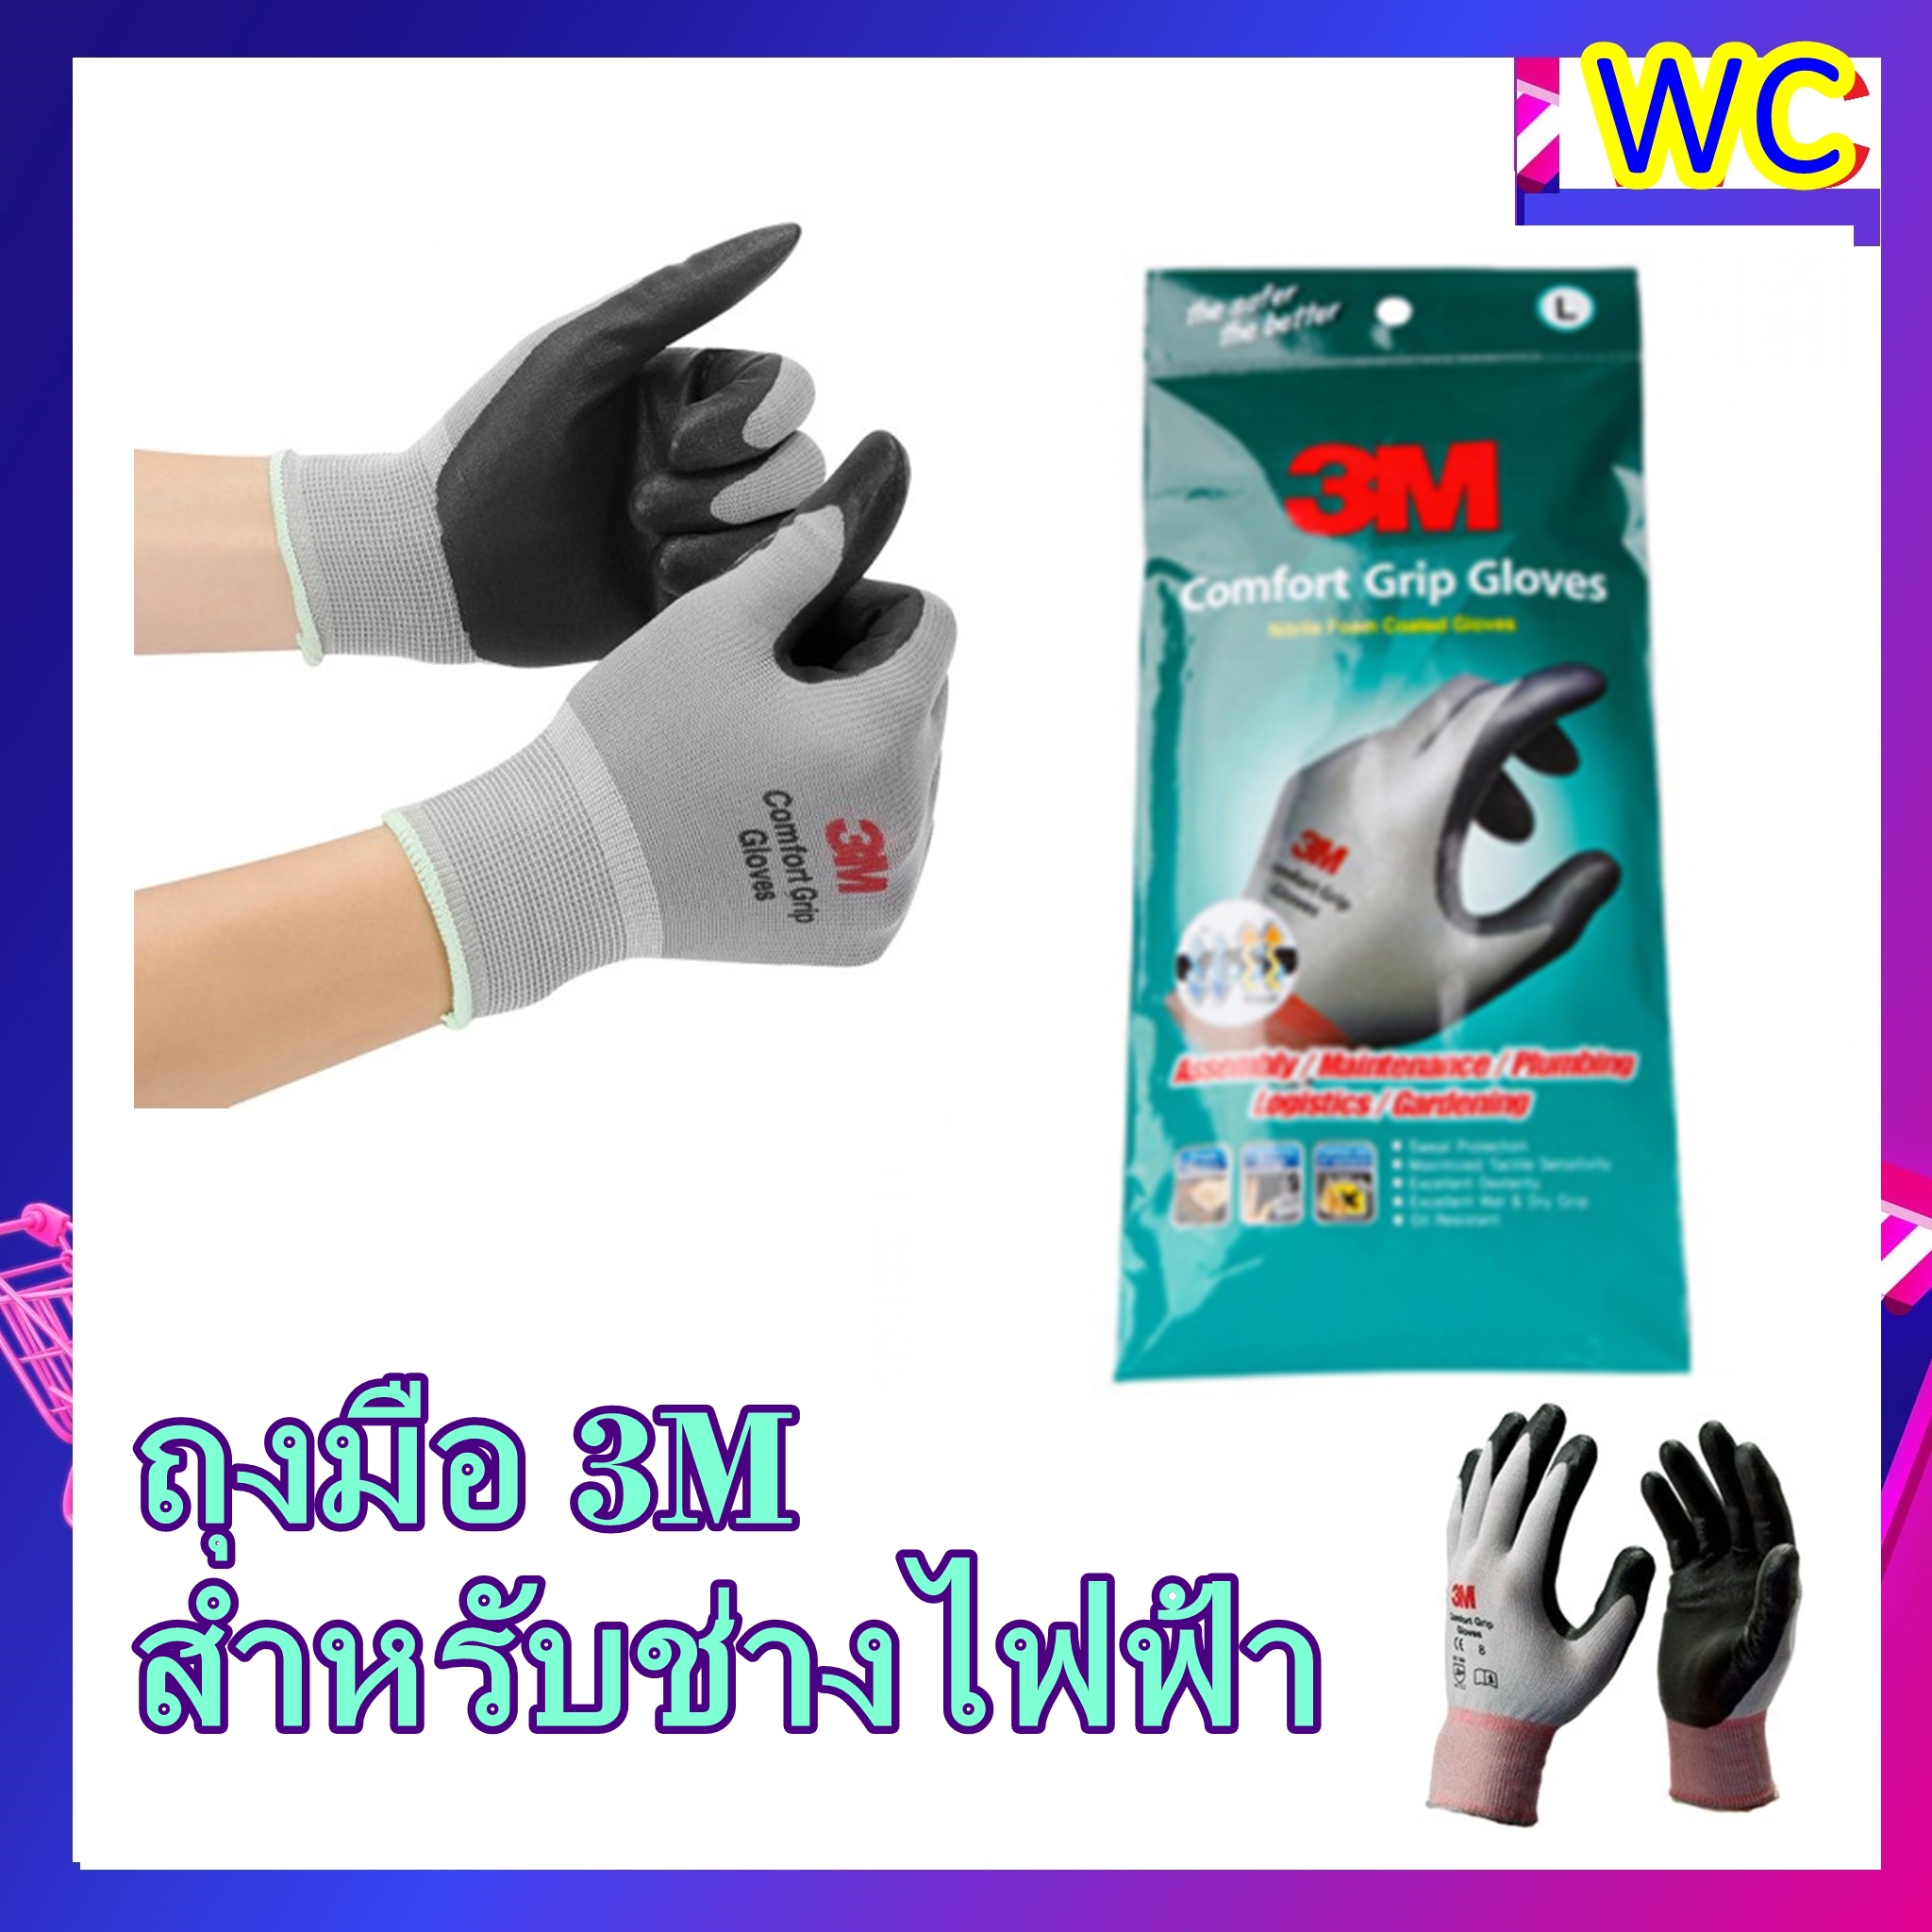 ถุงมือช่างไฟ 3M ถุงมือไนลอน เคลือบด้วยสารไนไตร สีเทา Comfort Grip Glovs ถุงมือไฟฟ้า และป้องกันการบาดคม